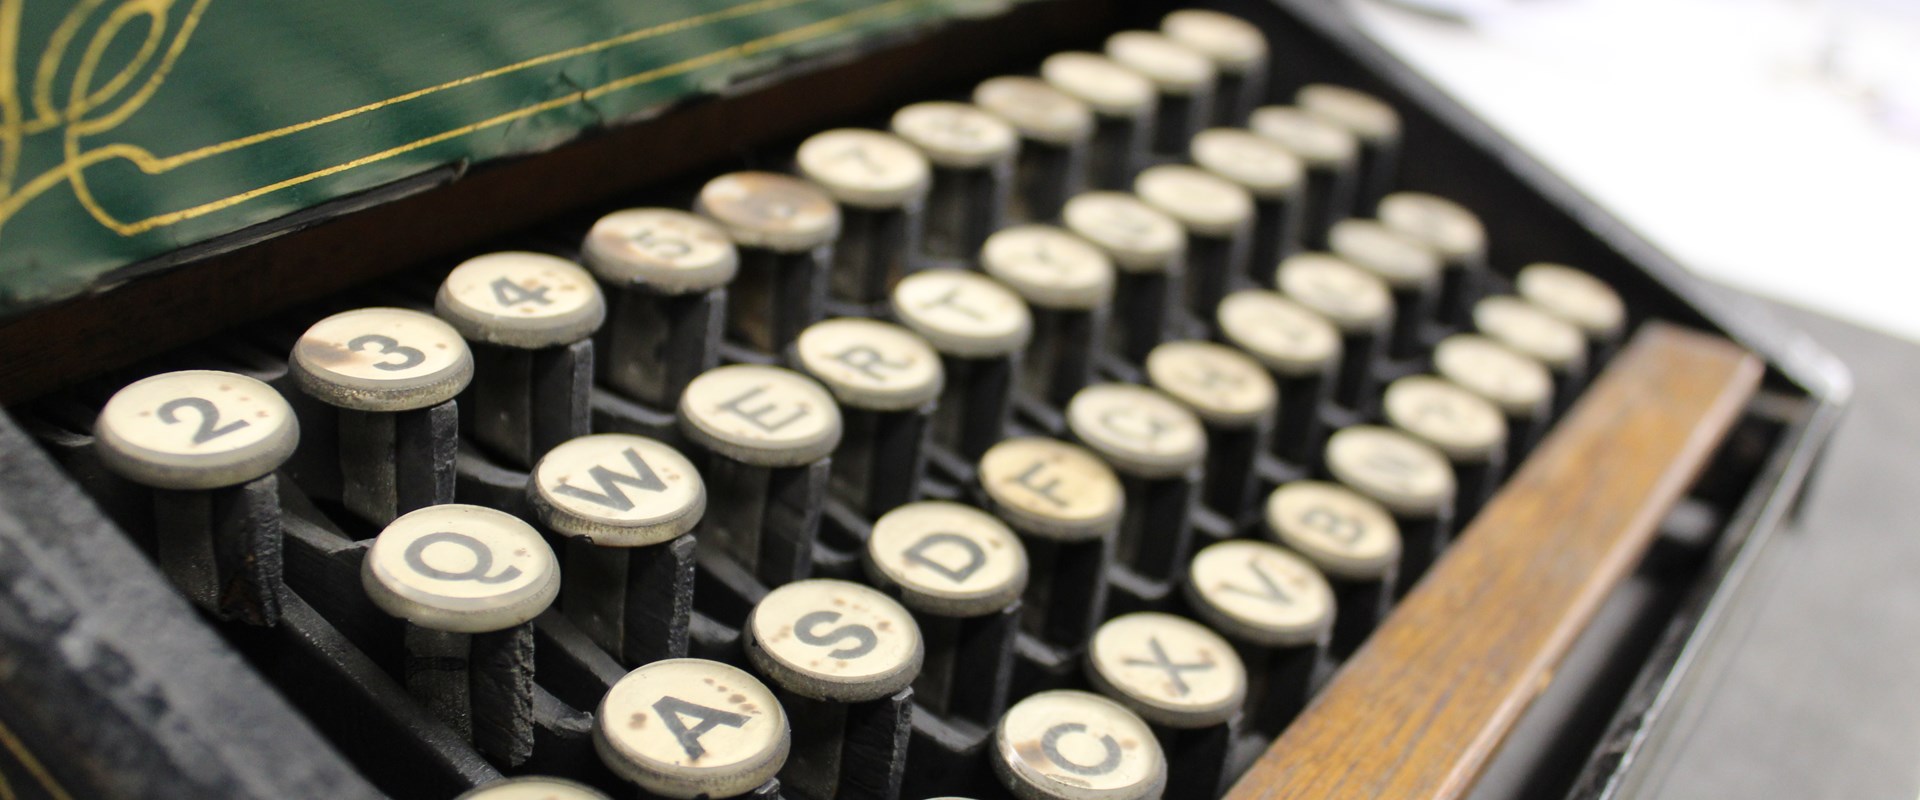 Sholes Glidden Typewriter Keyboard.JPG